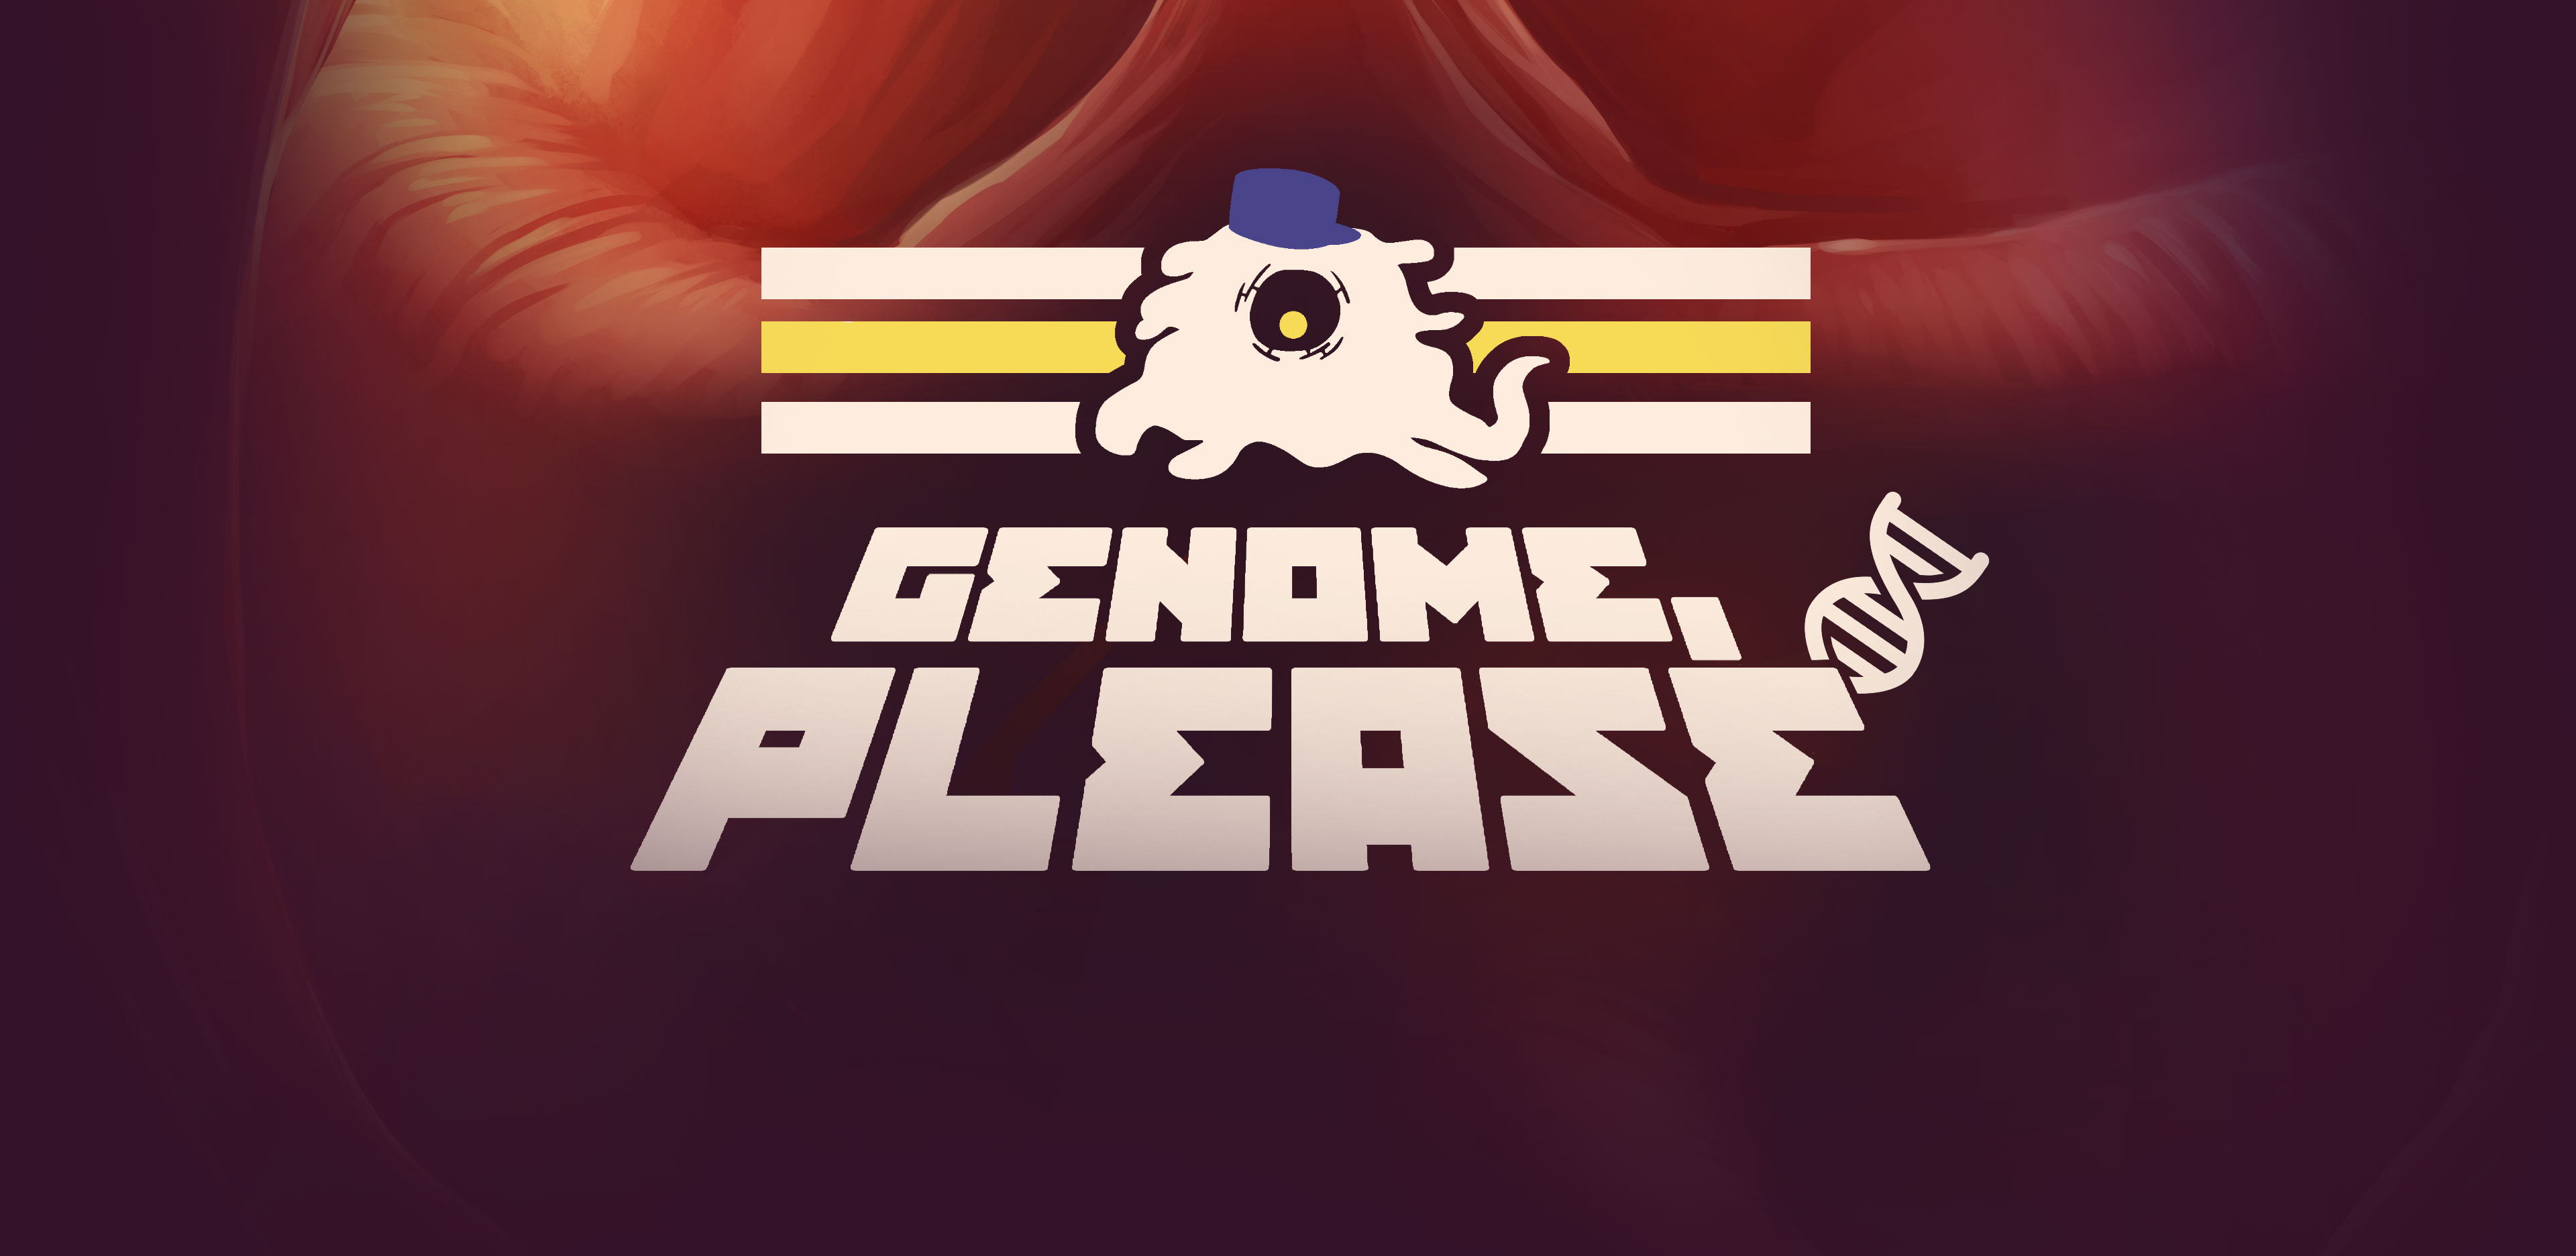 Genome, Please !